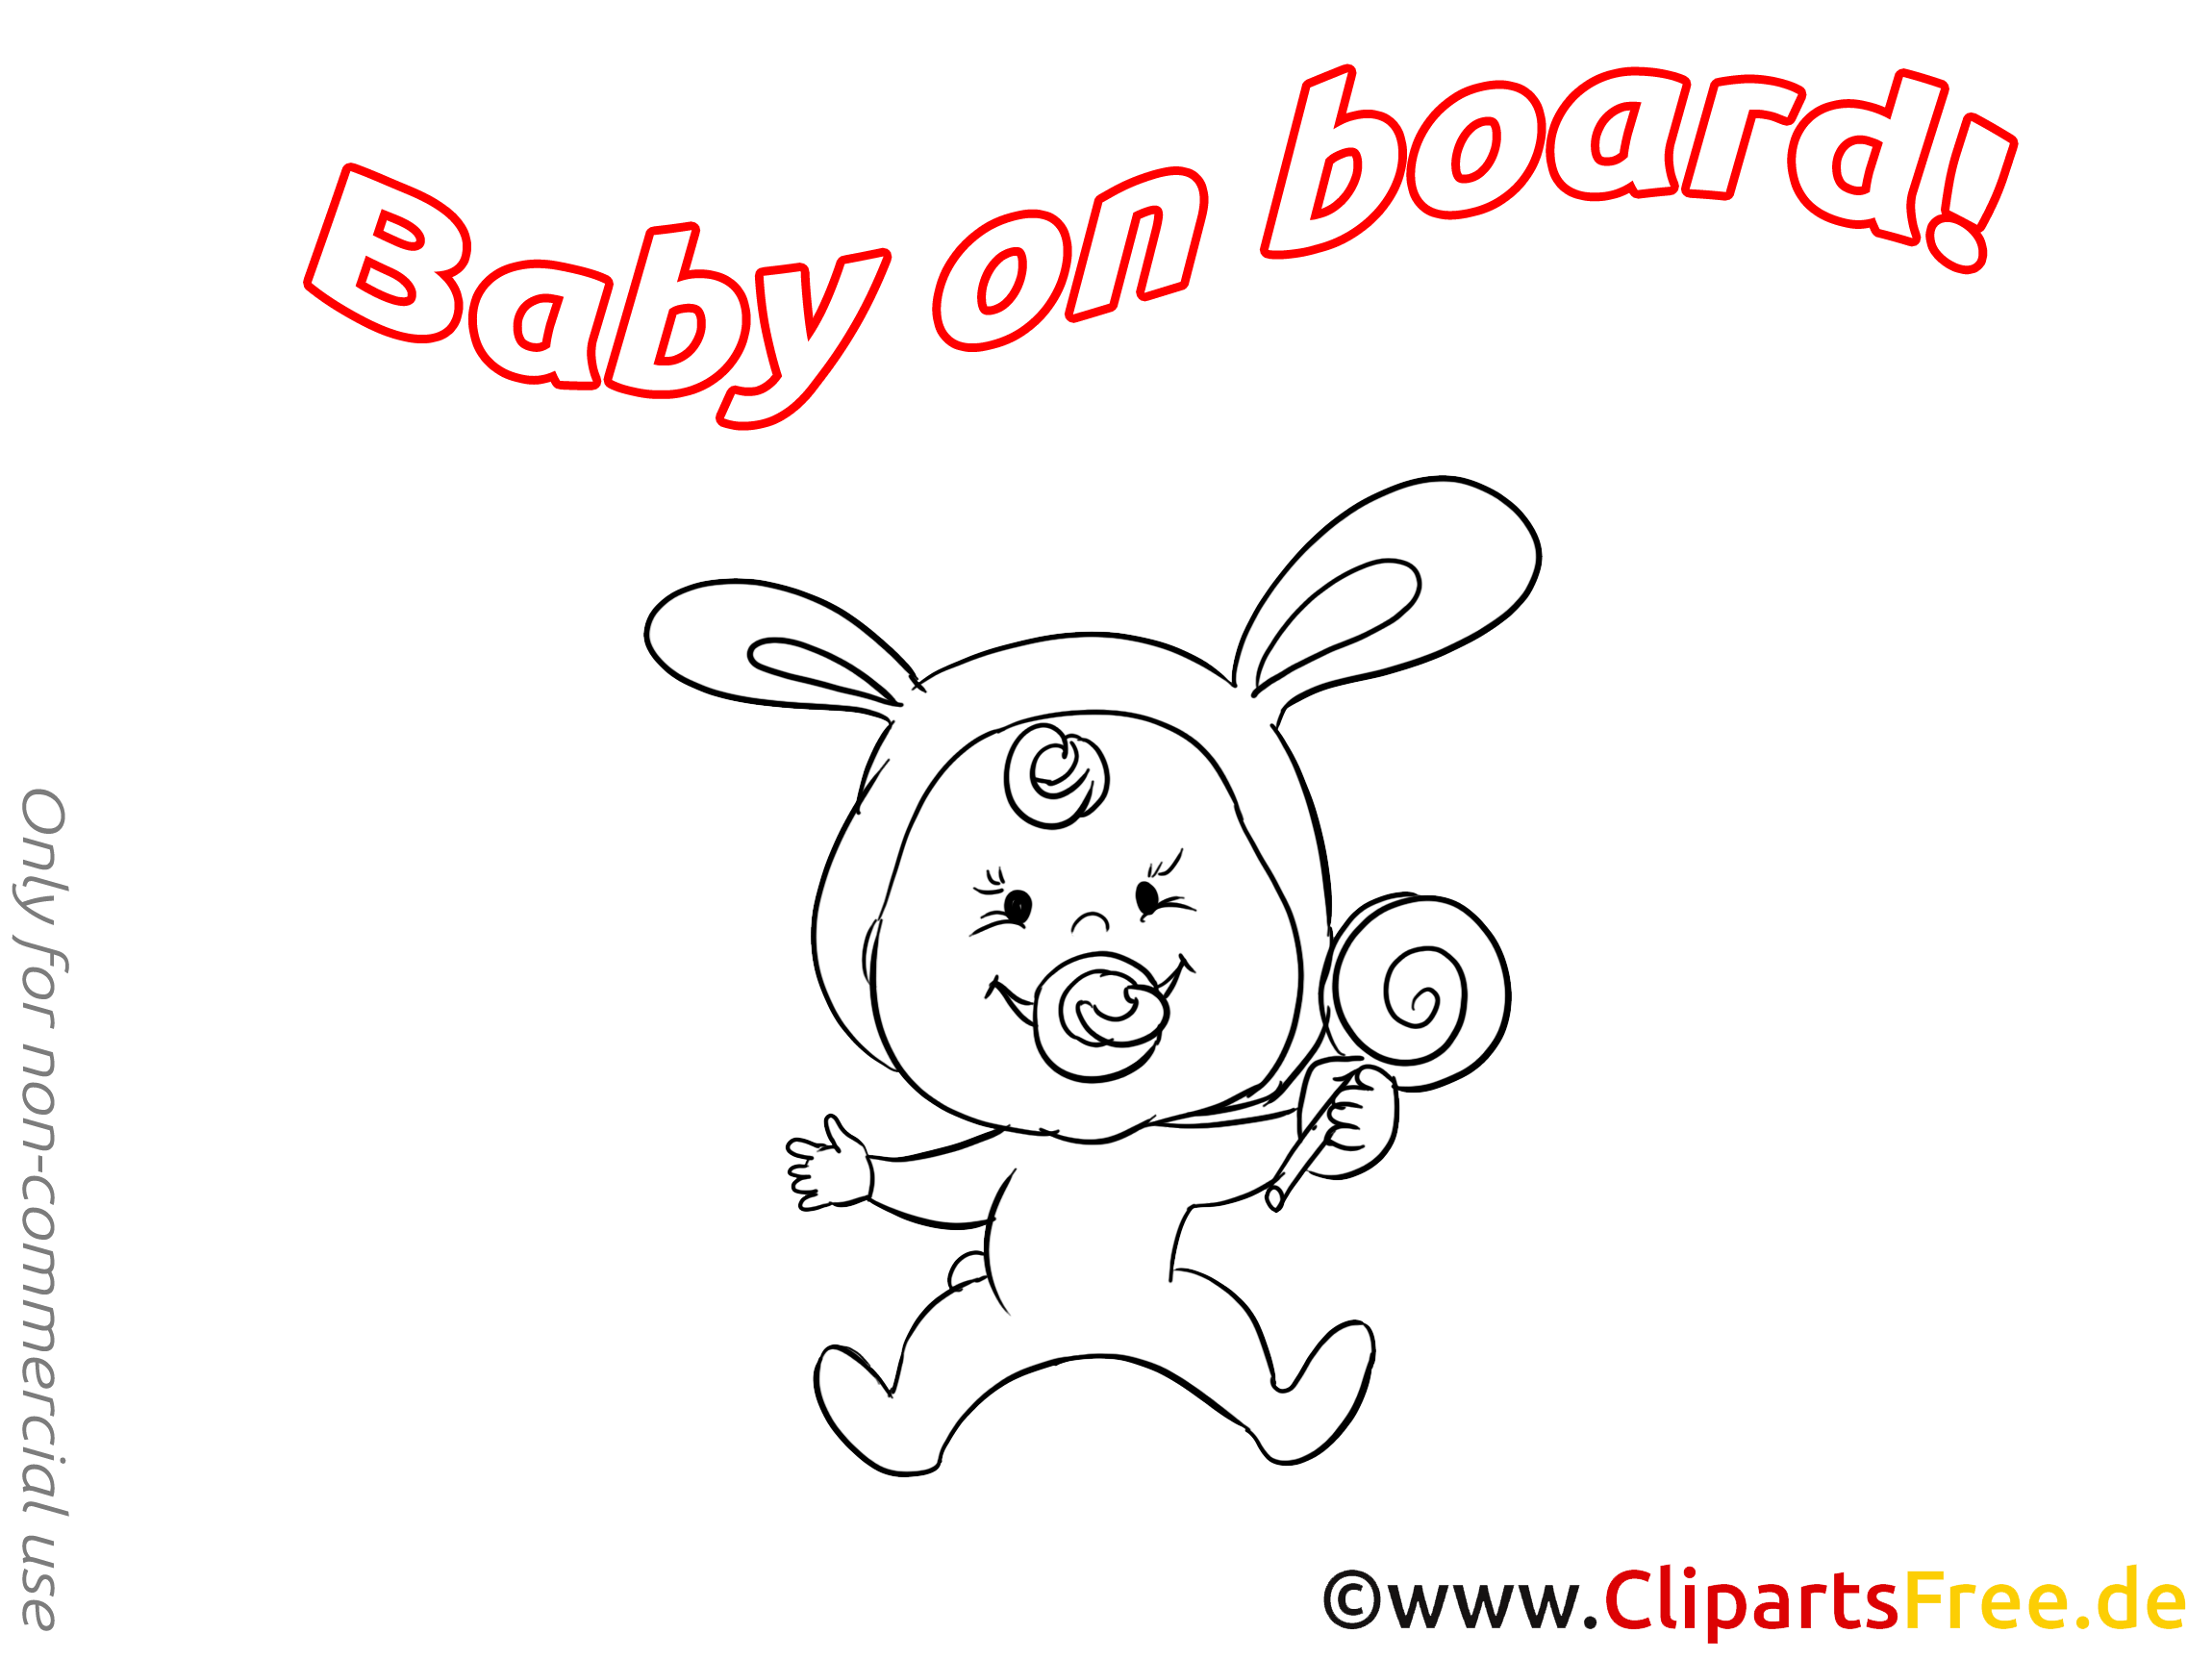 Sucette dessin à colorier – Bébé à bord à télécharger